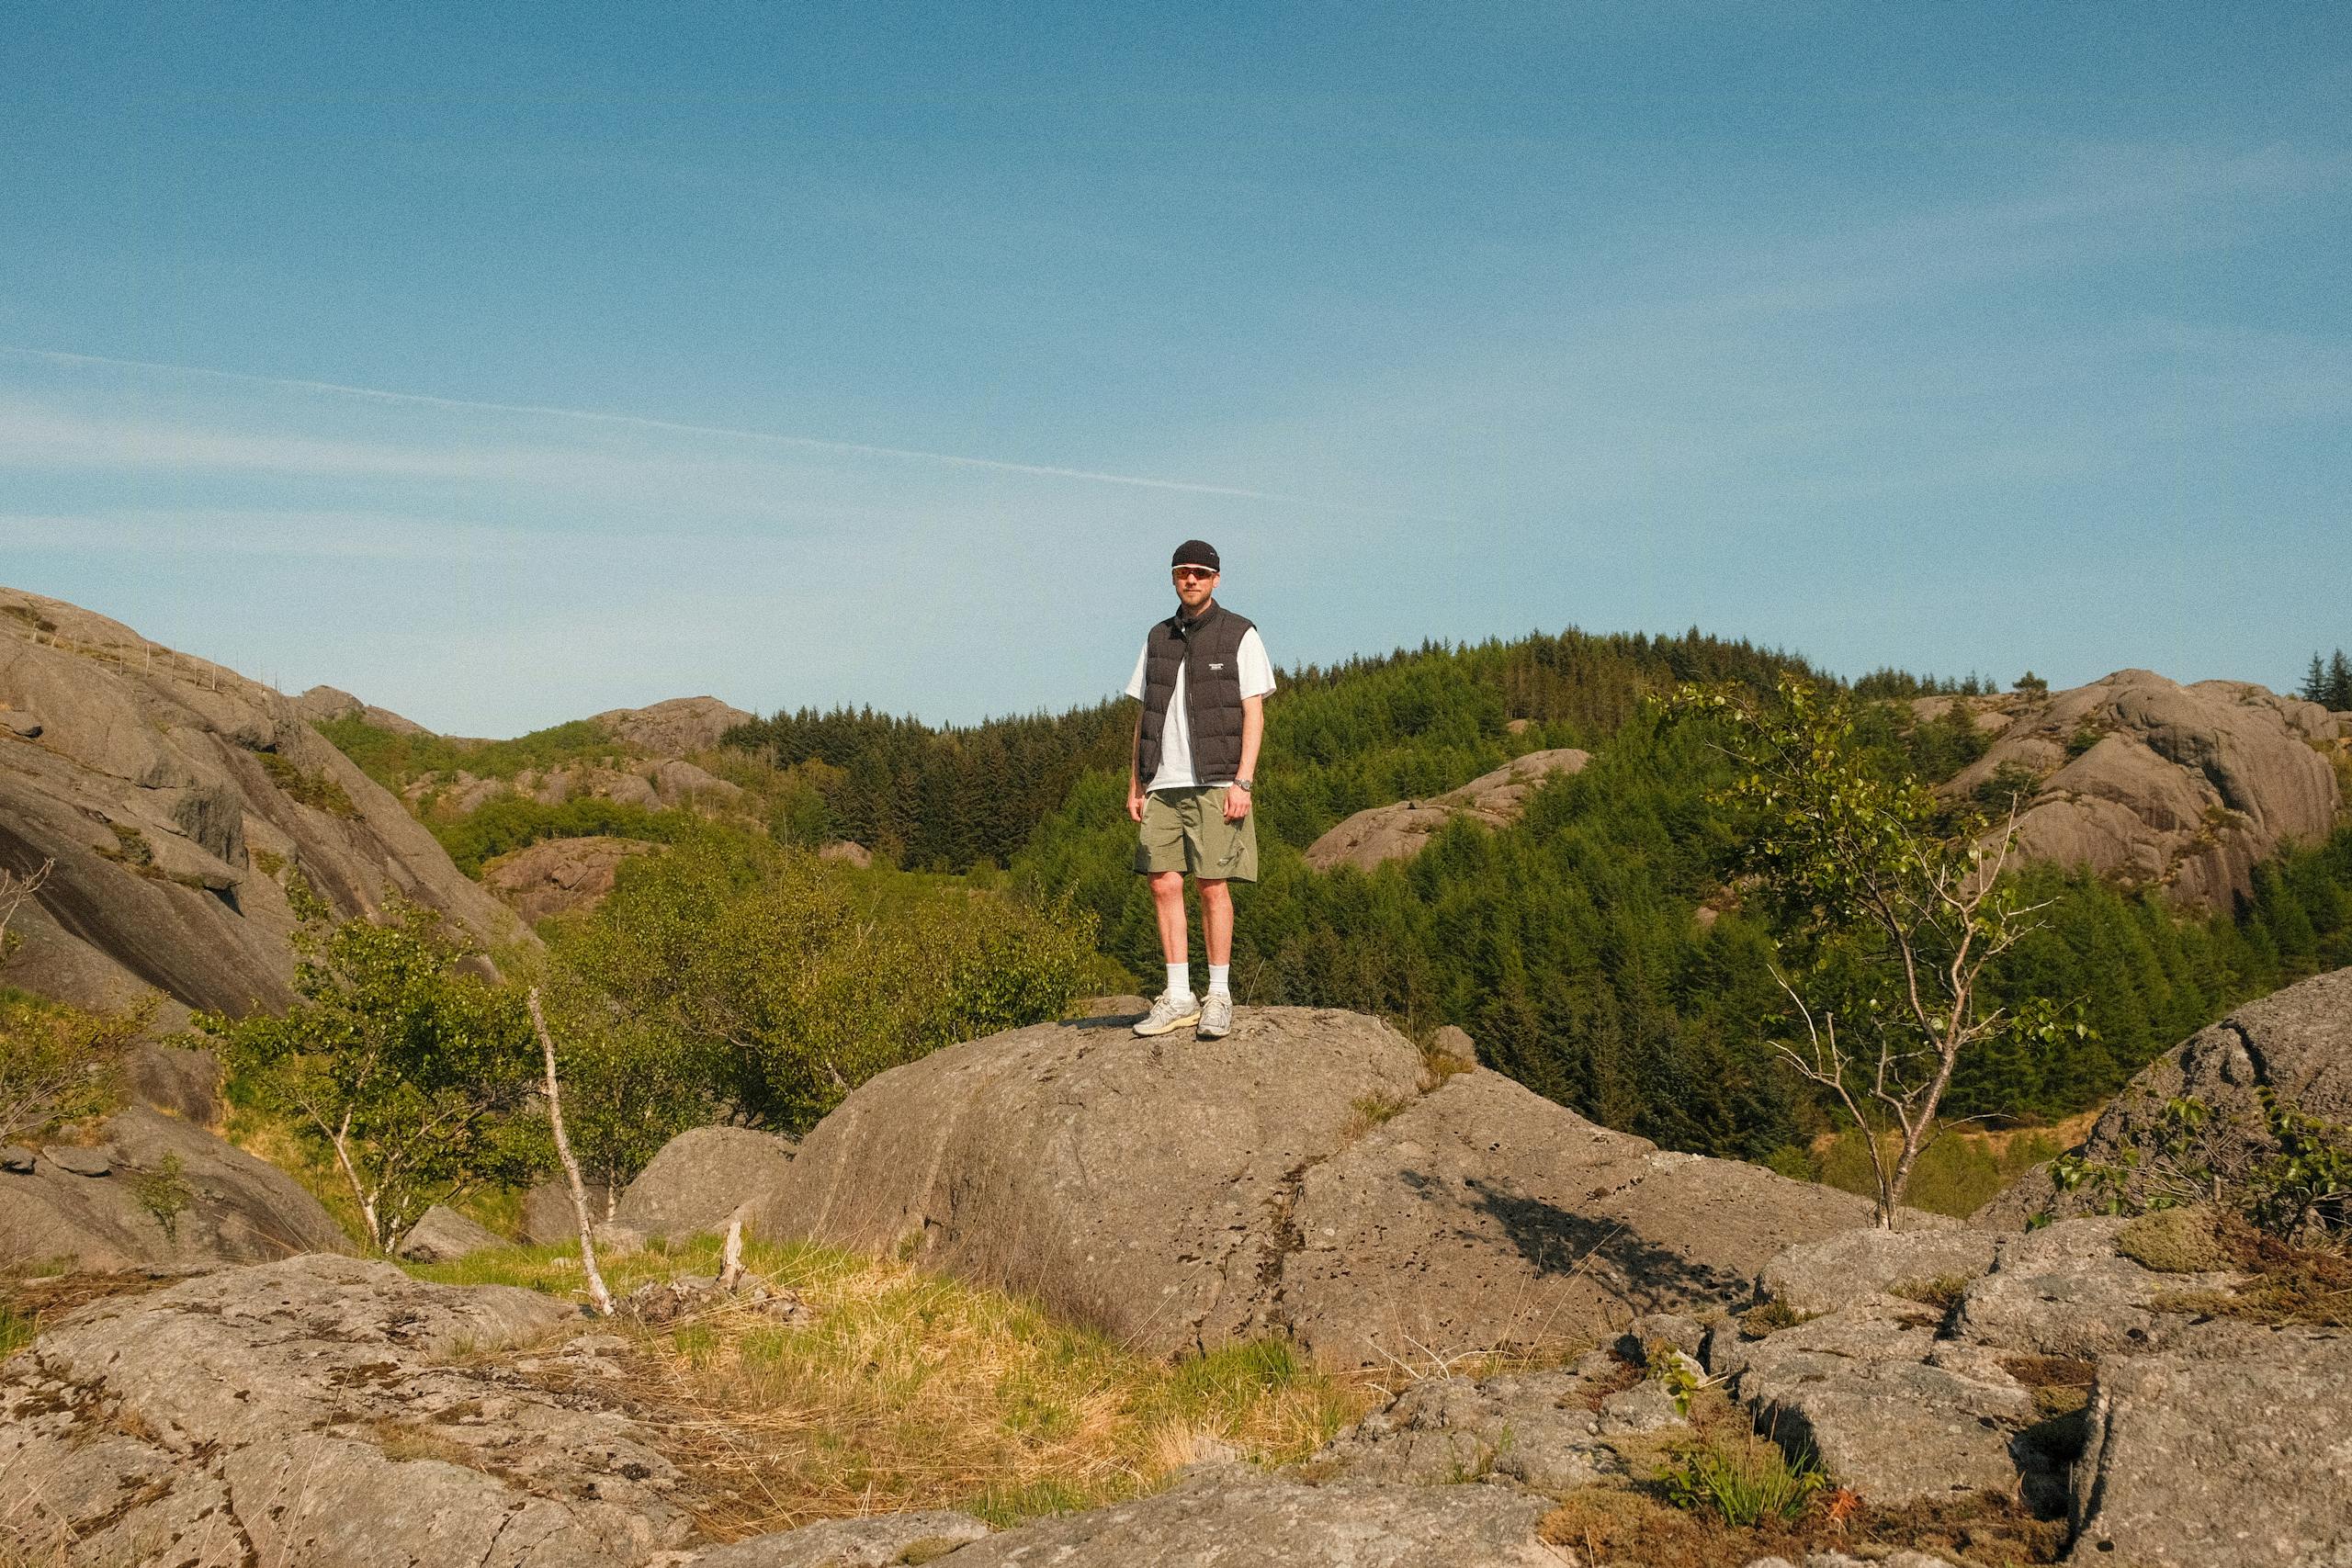 Simon Zimmermanns Sommerurlaub: "Ich hatte keine Ahnung, wie wunderschön Westnorwegen wirklich ist"